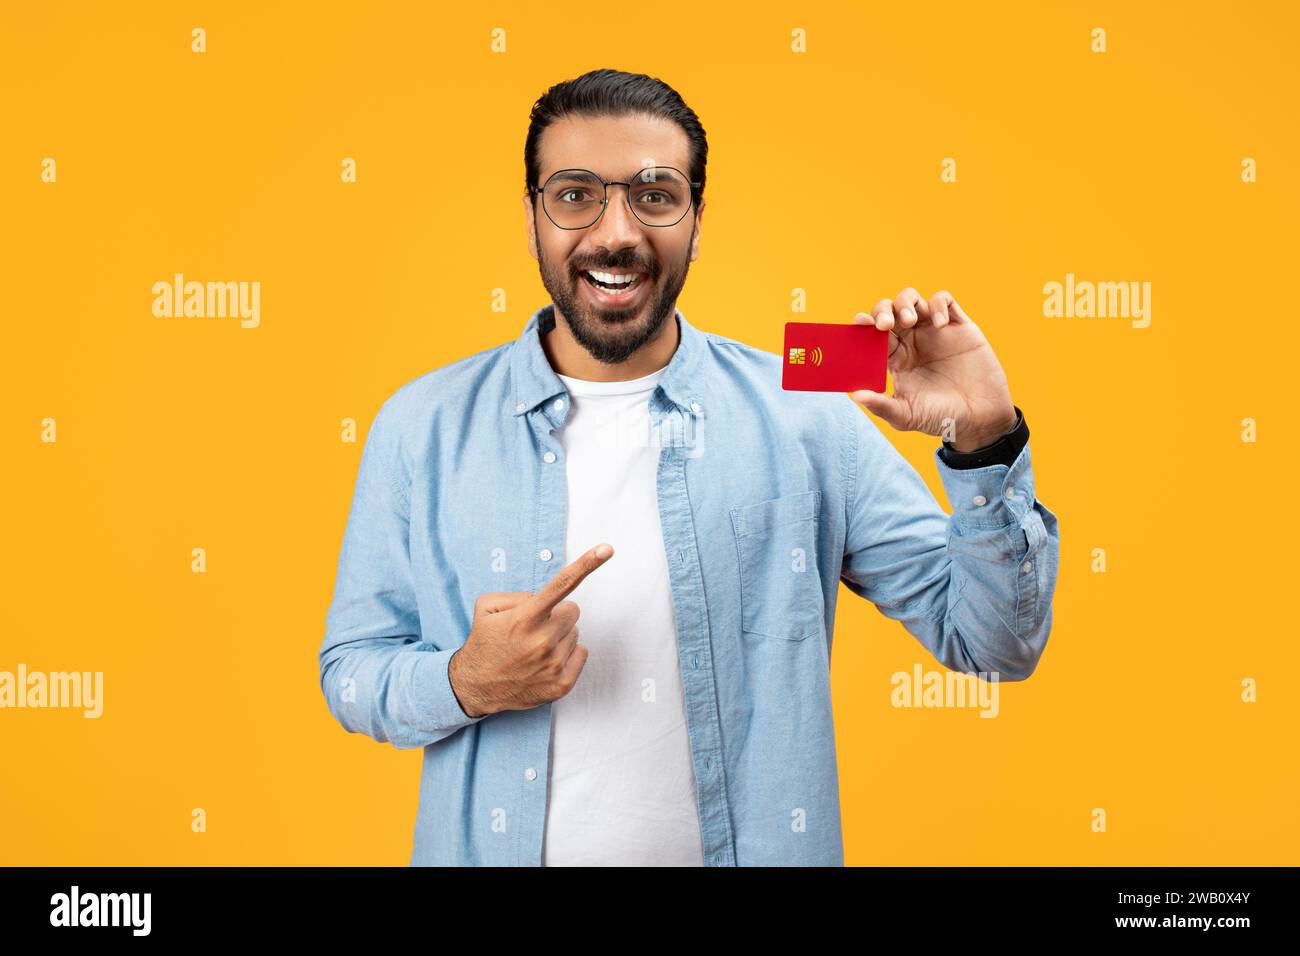 Un uomo allegro con una camicia in denim che regge una carta di credito rossa e la punta con l'altra mano Foto Stock